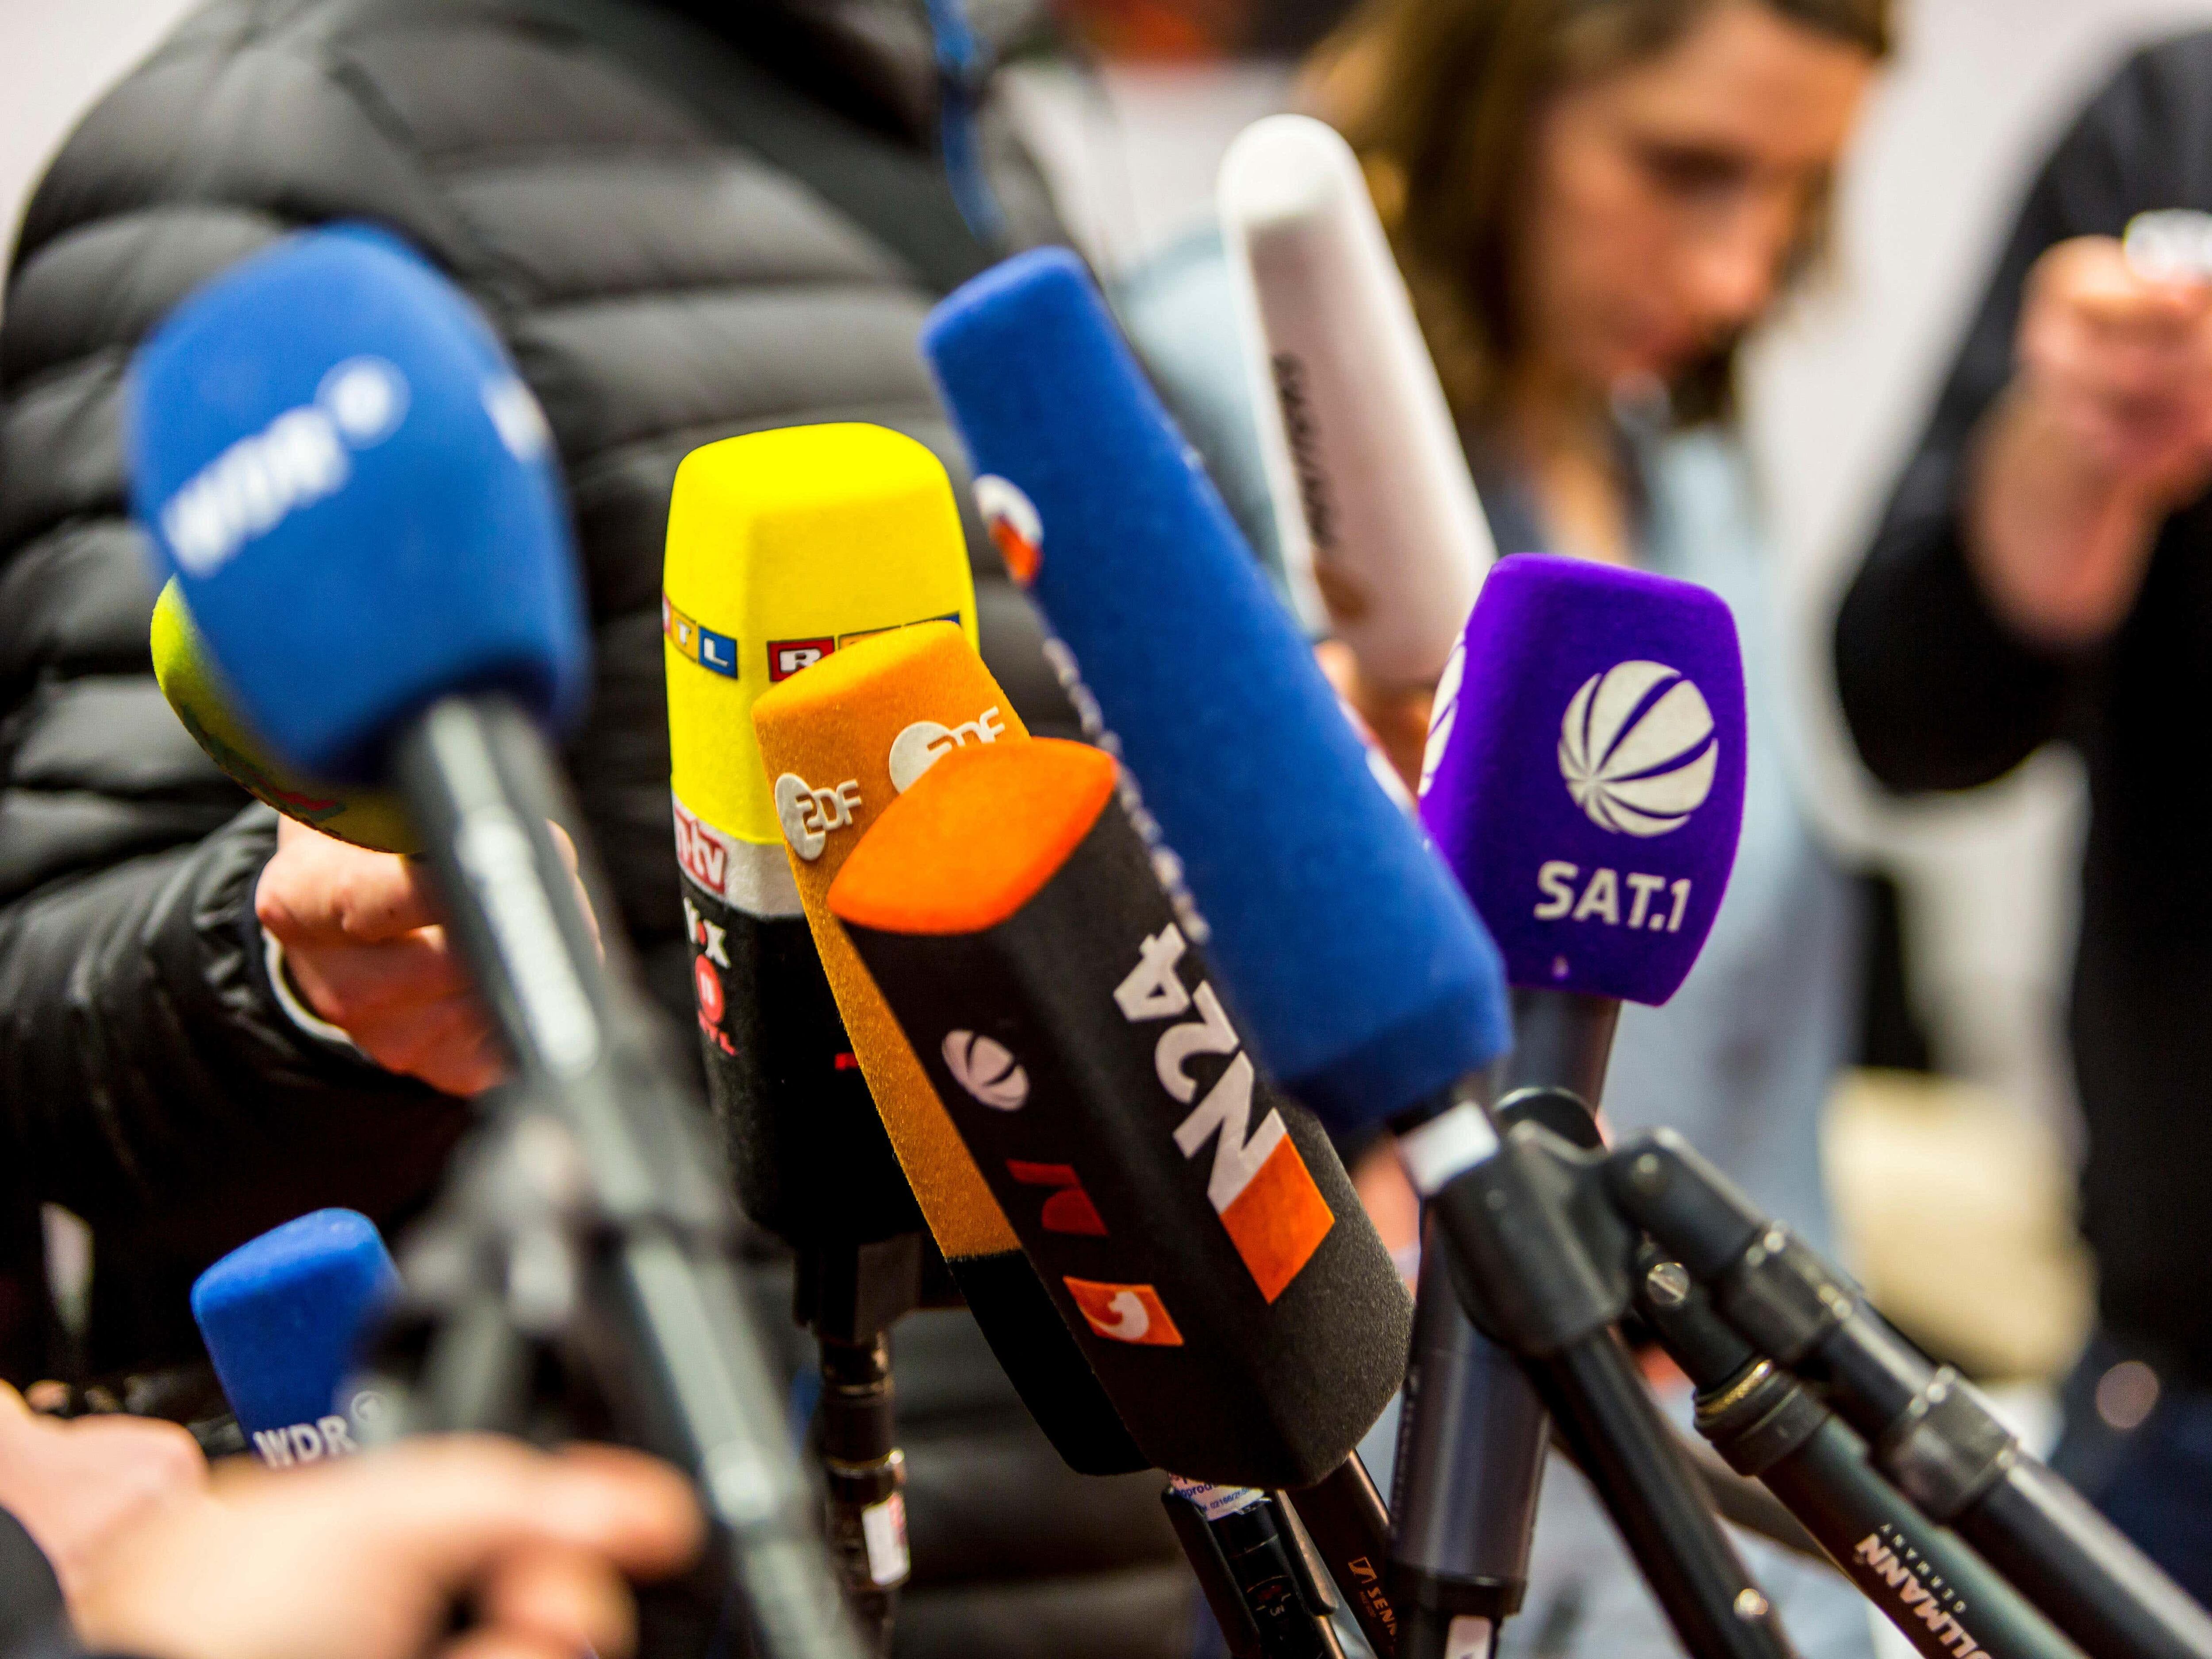 Relationship between police and journalists is broken, say media bodies